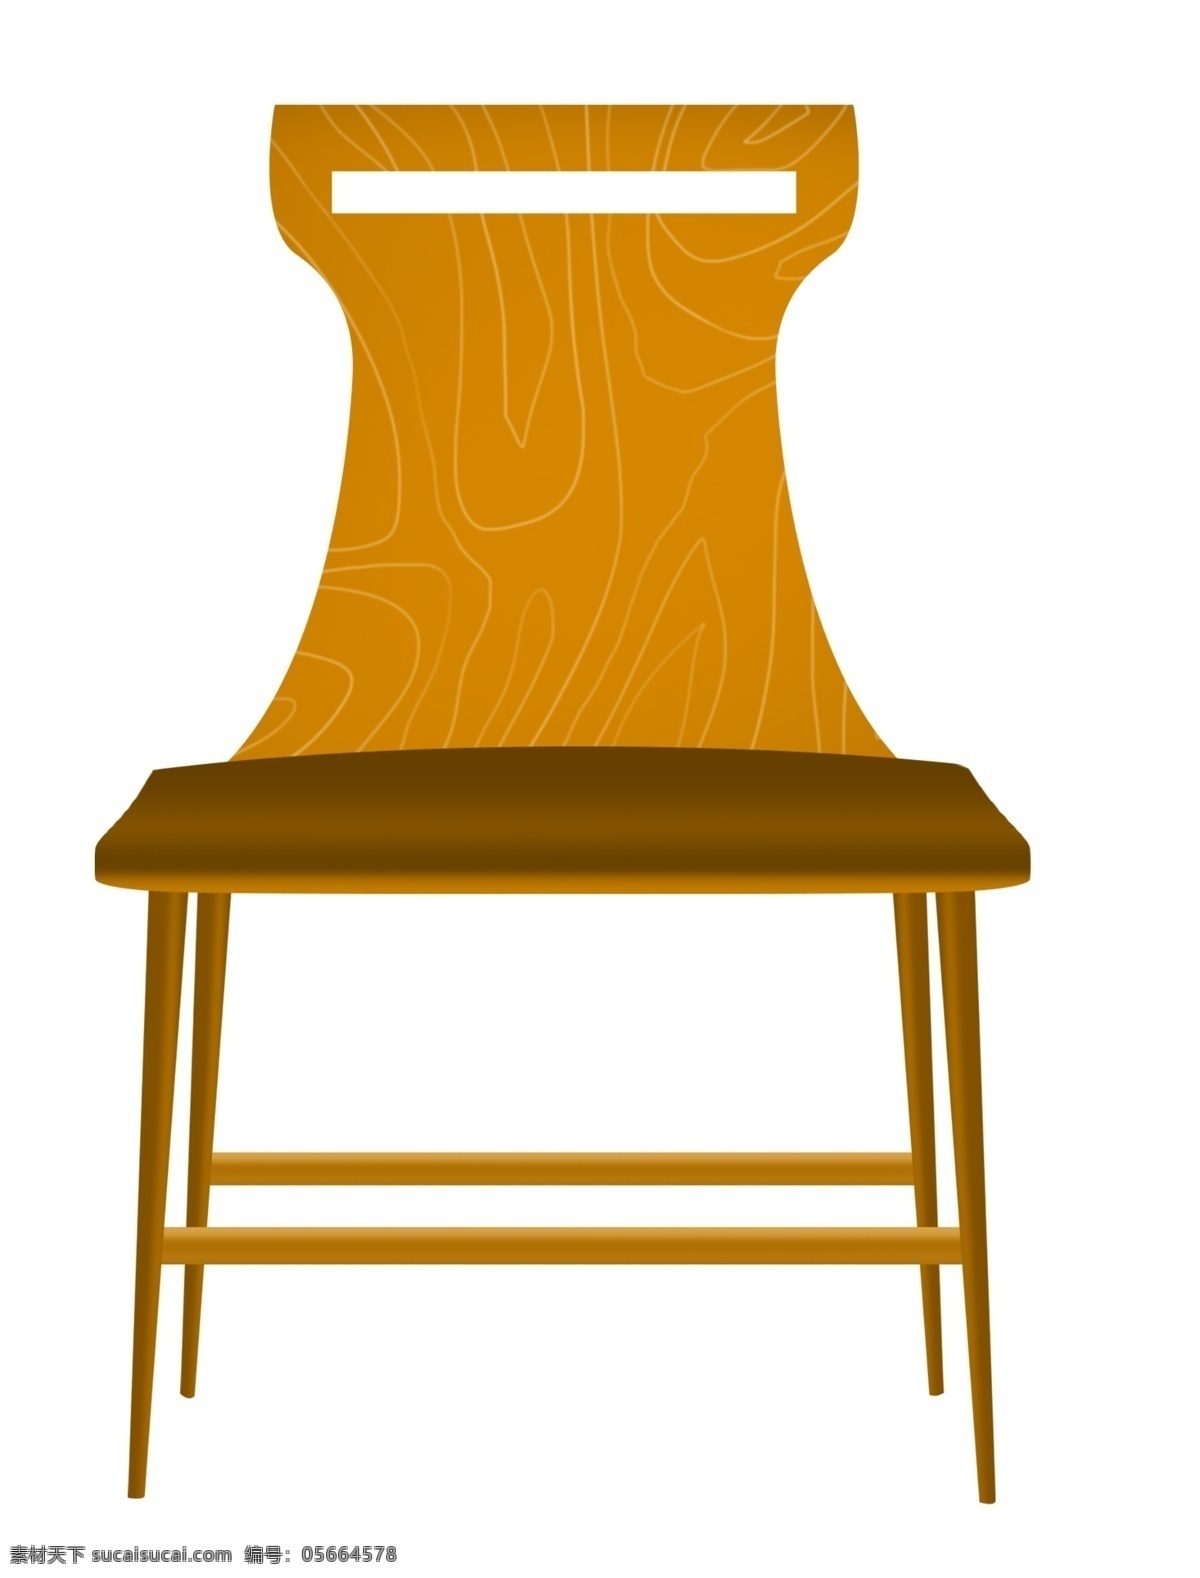 木质 椅子 卡通 插画 木质的椅子 卡通插画 家具插画 椅子插画 家具椅子 凳子座位 黄色的椅子